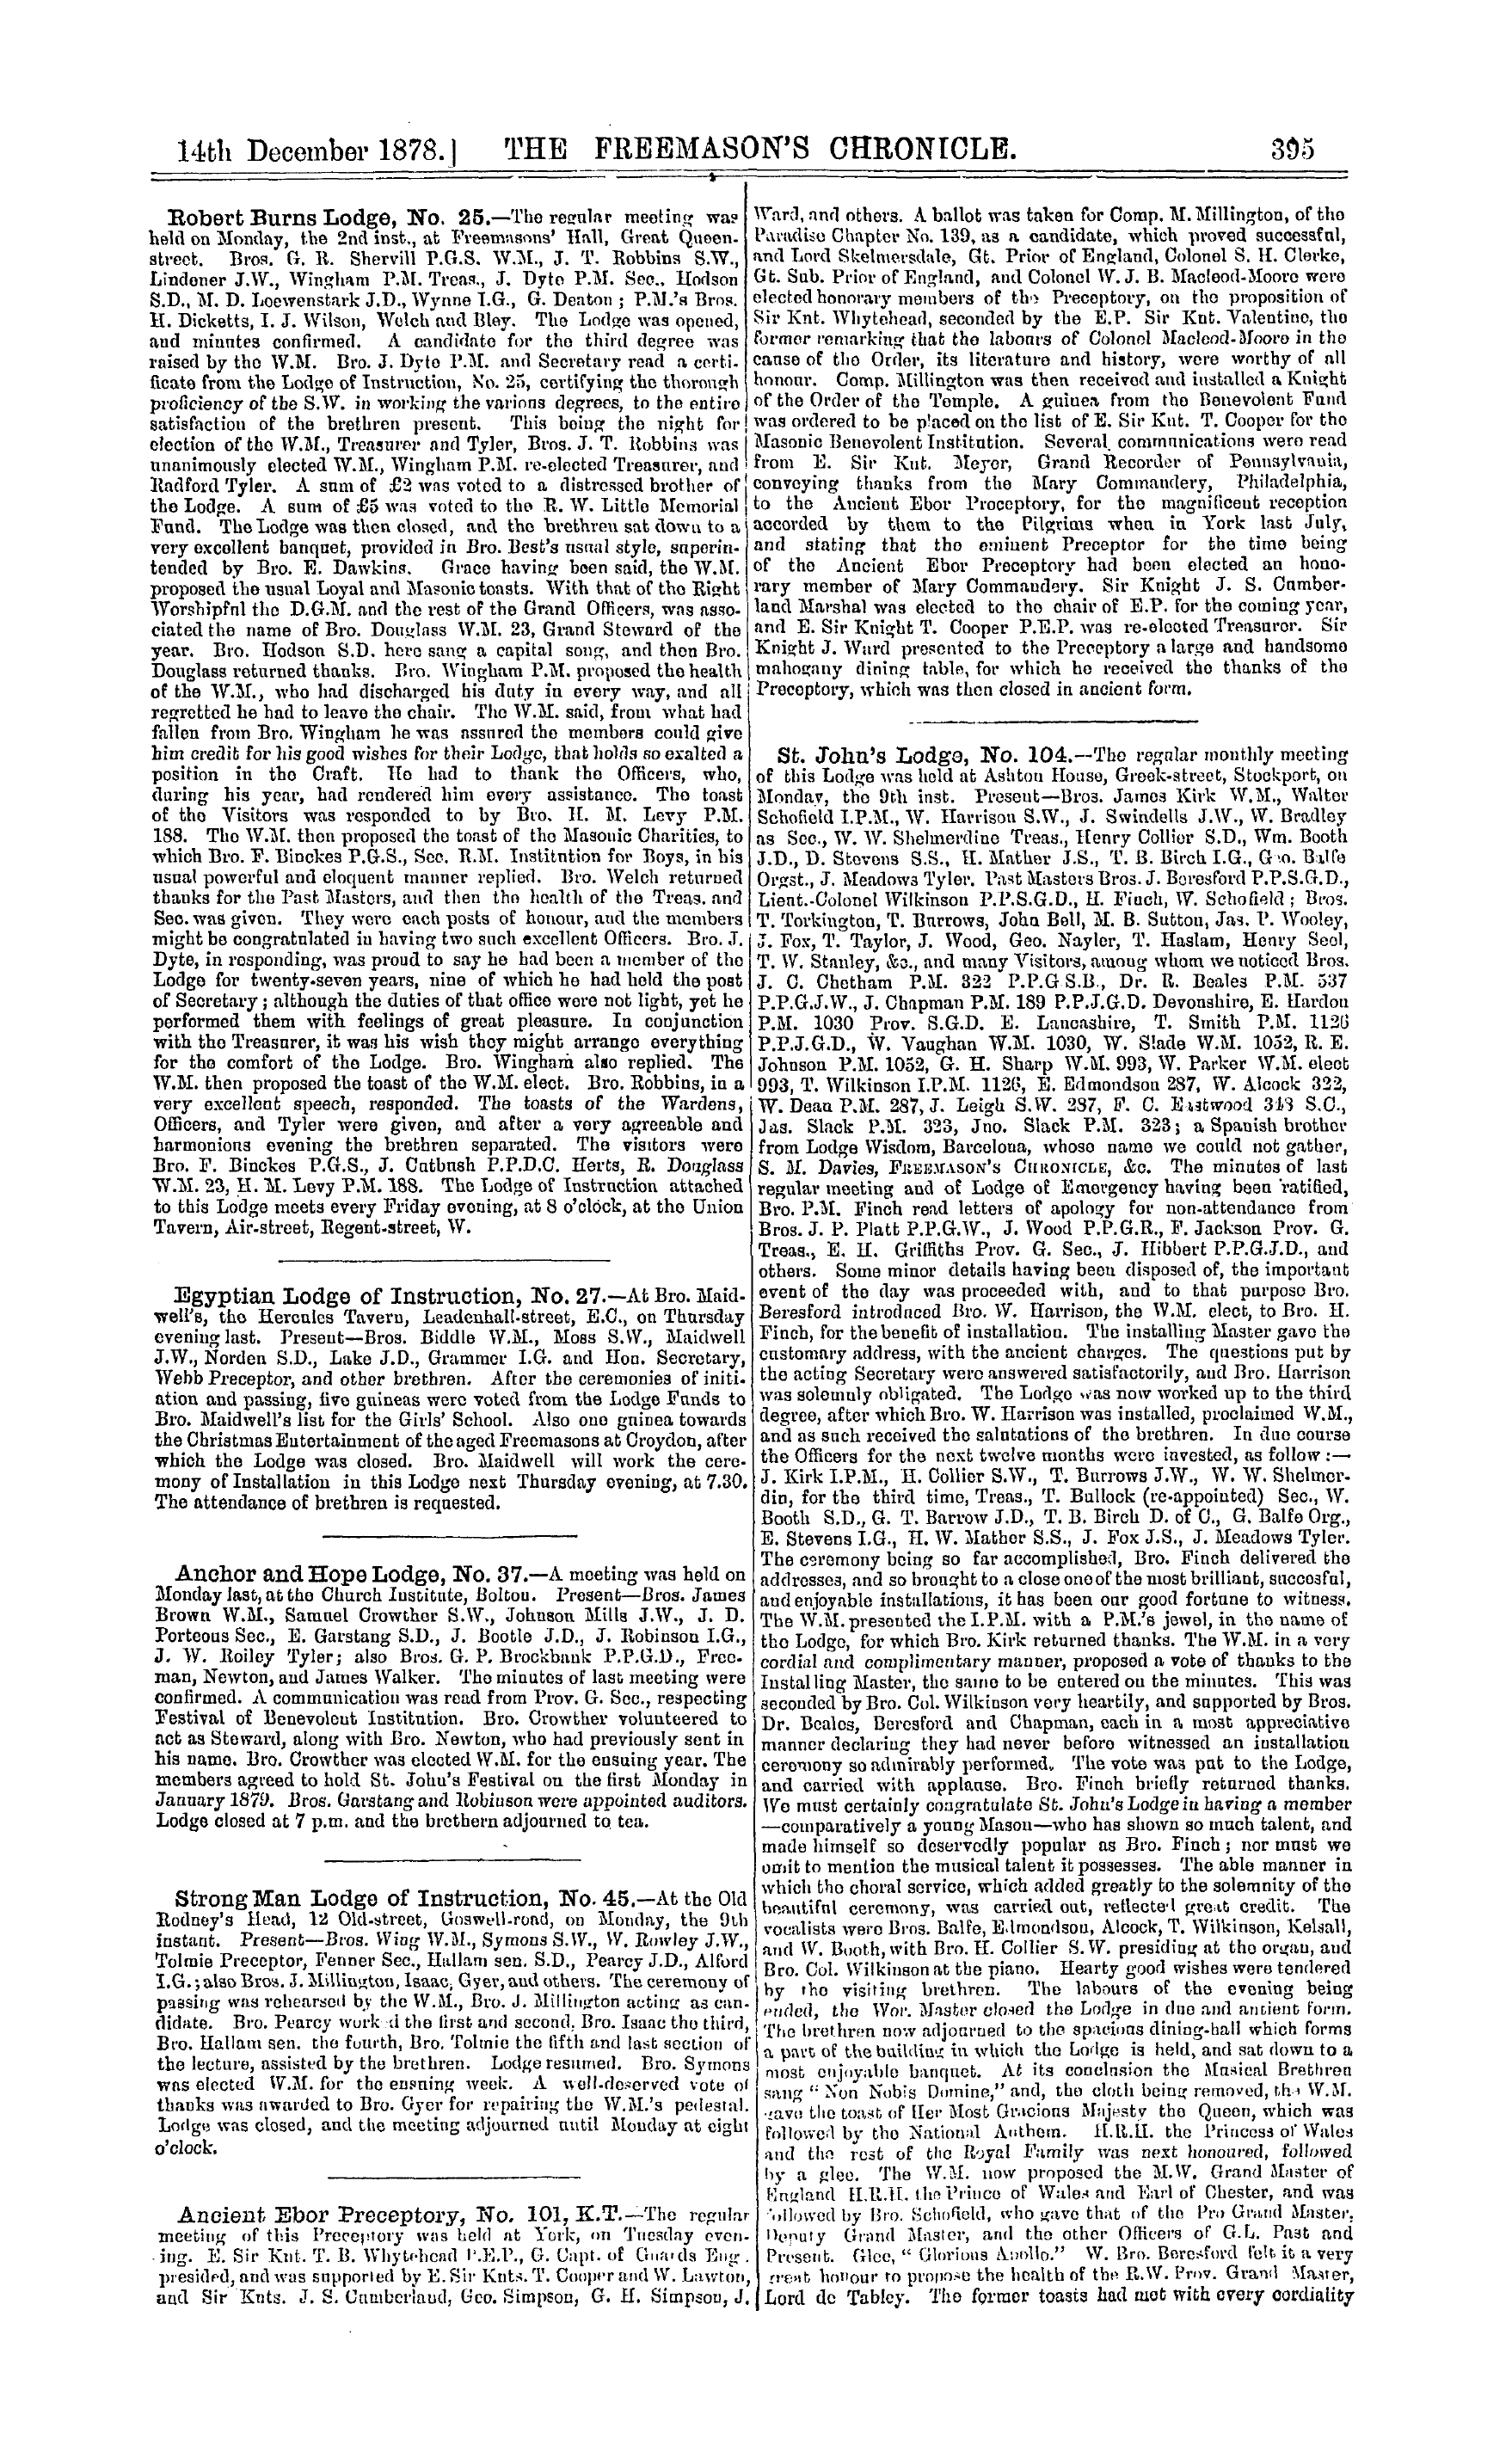 The Freemason's Chronicle: 1878-12-14 - Ar01201